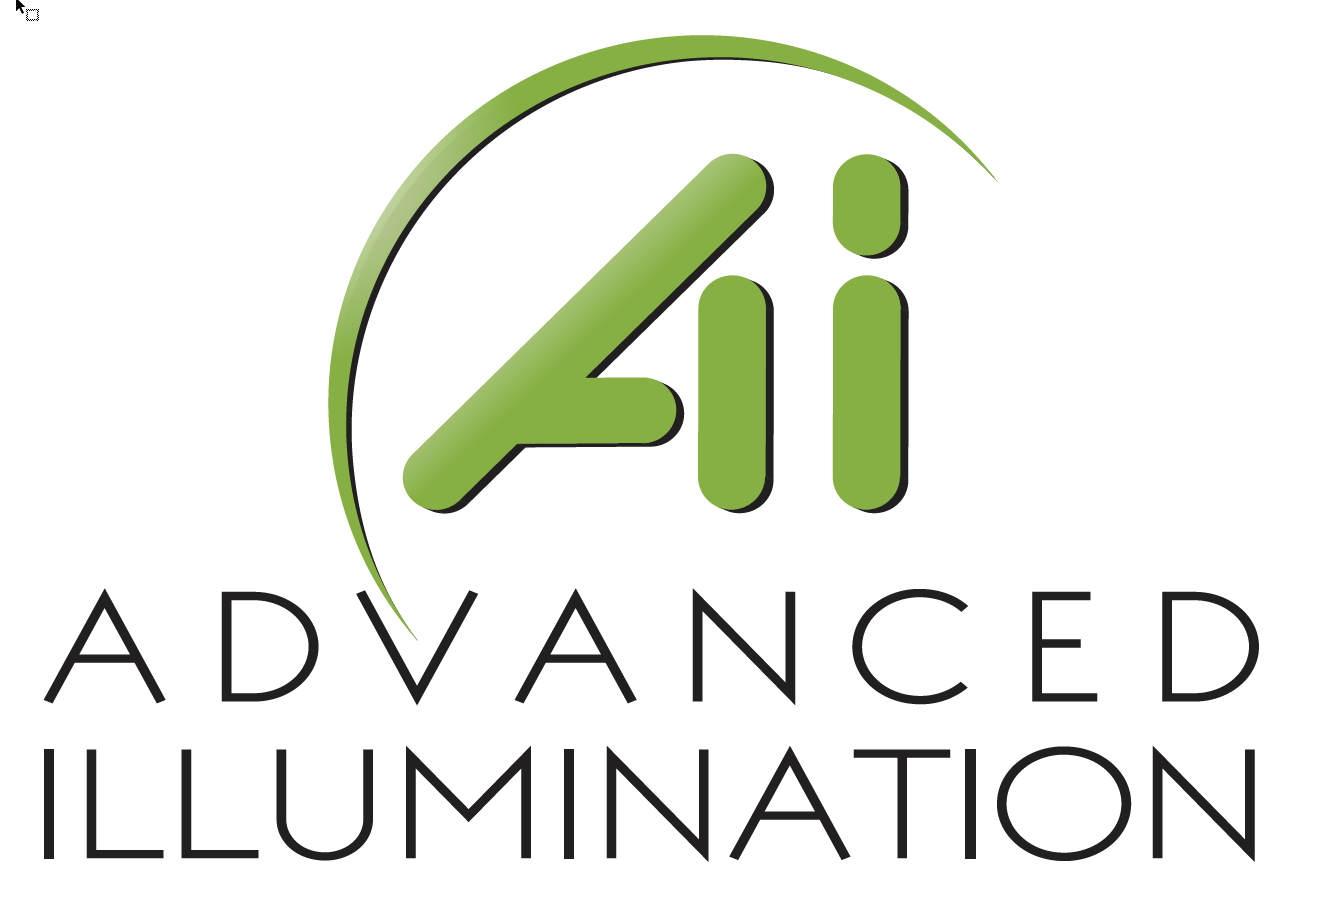 Advanced Illumination